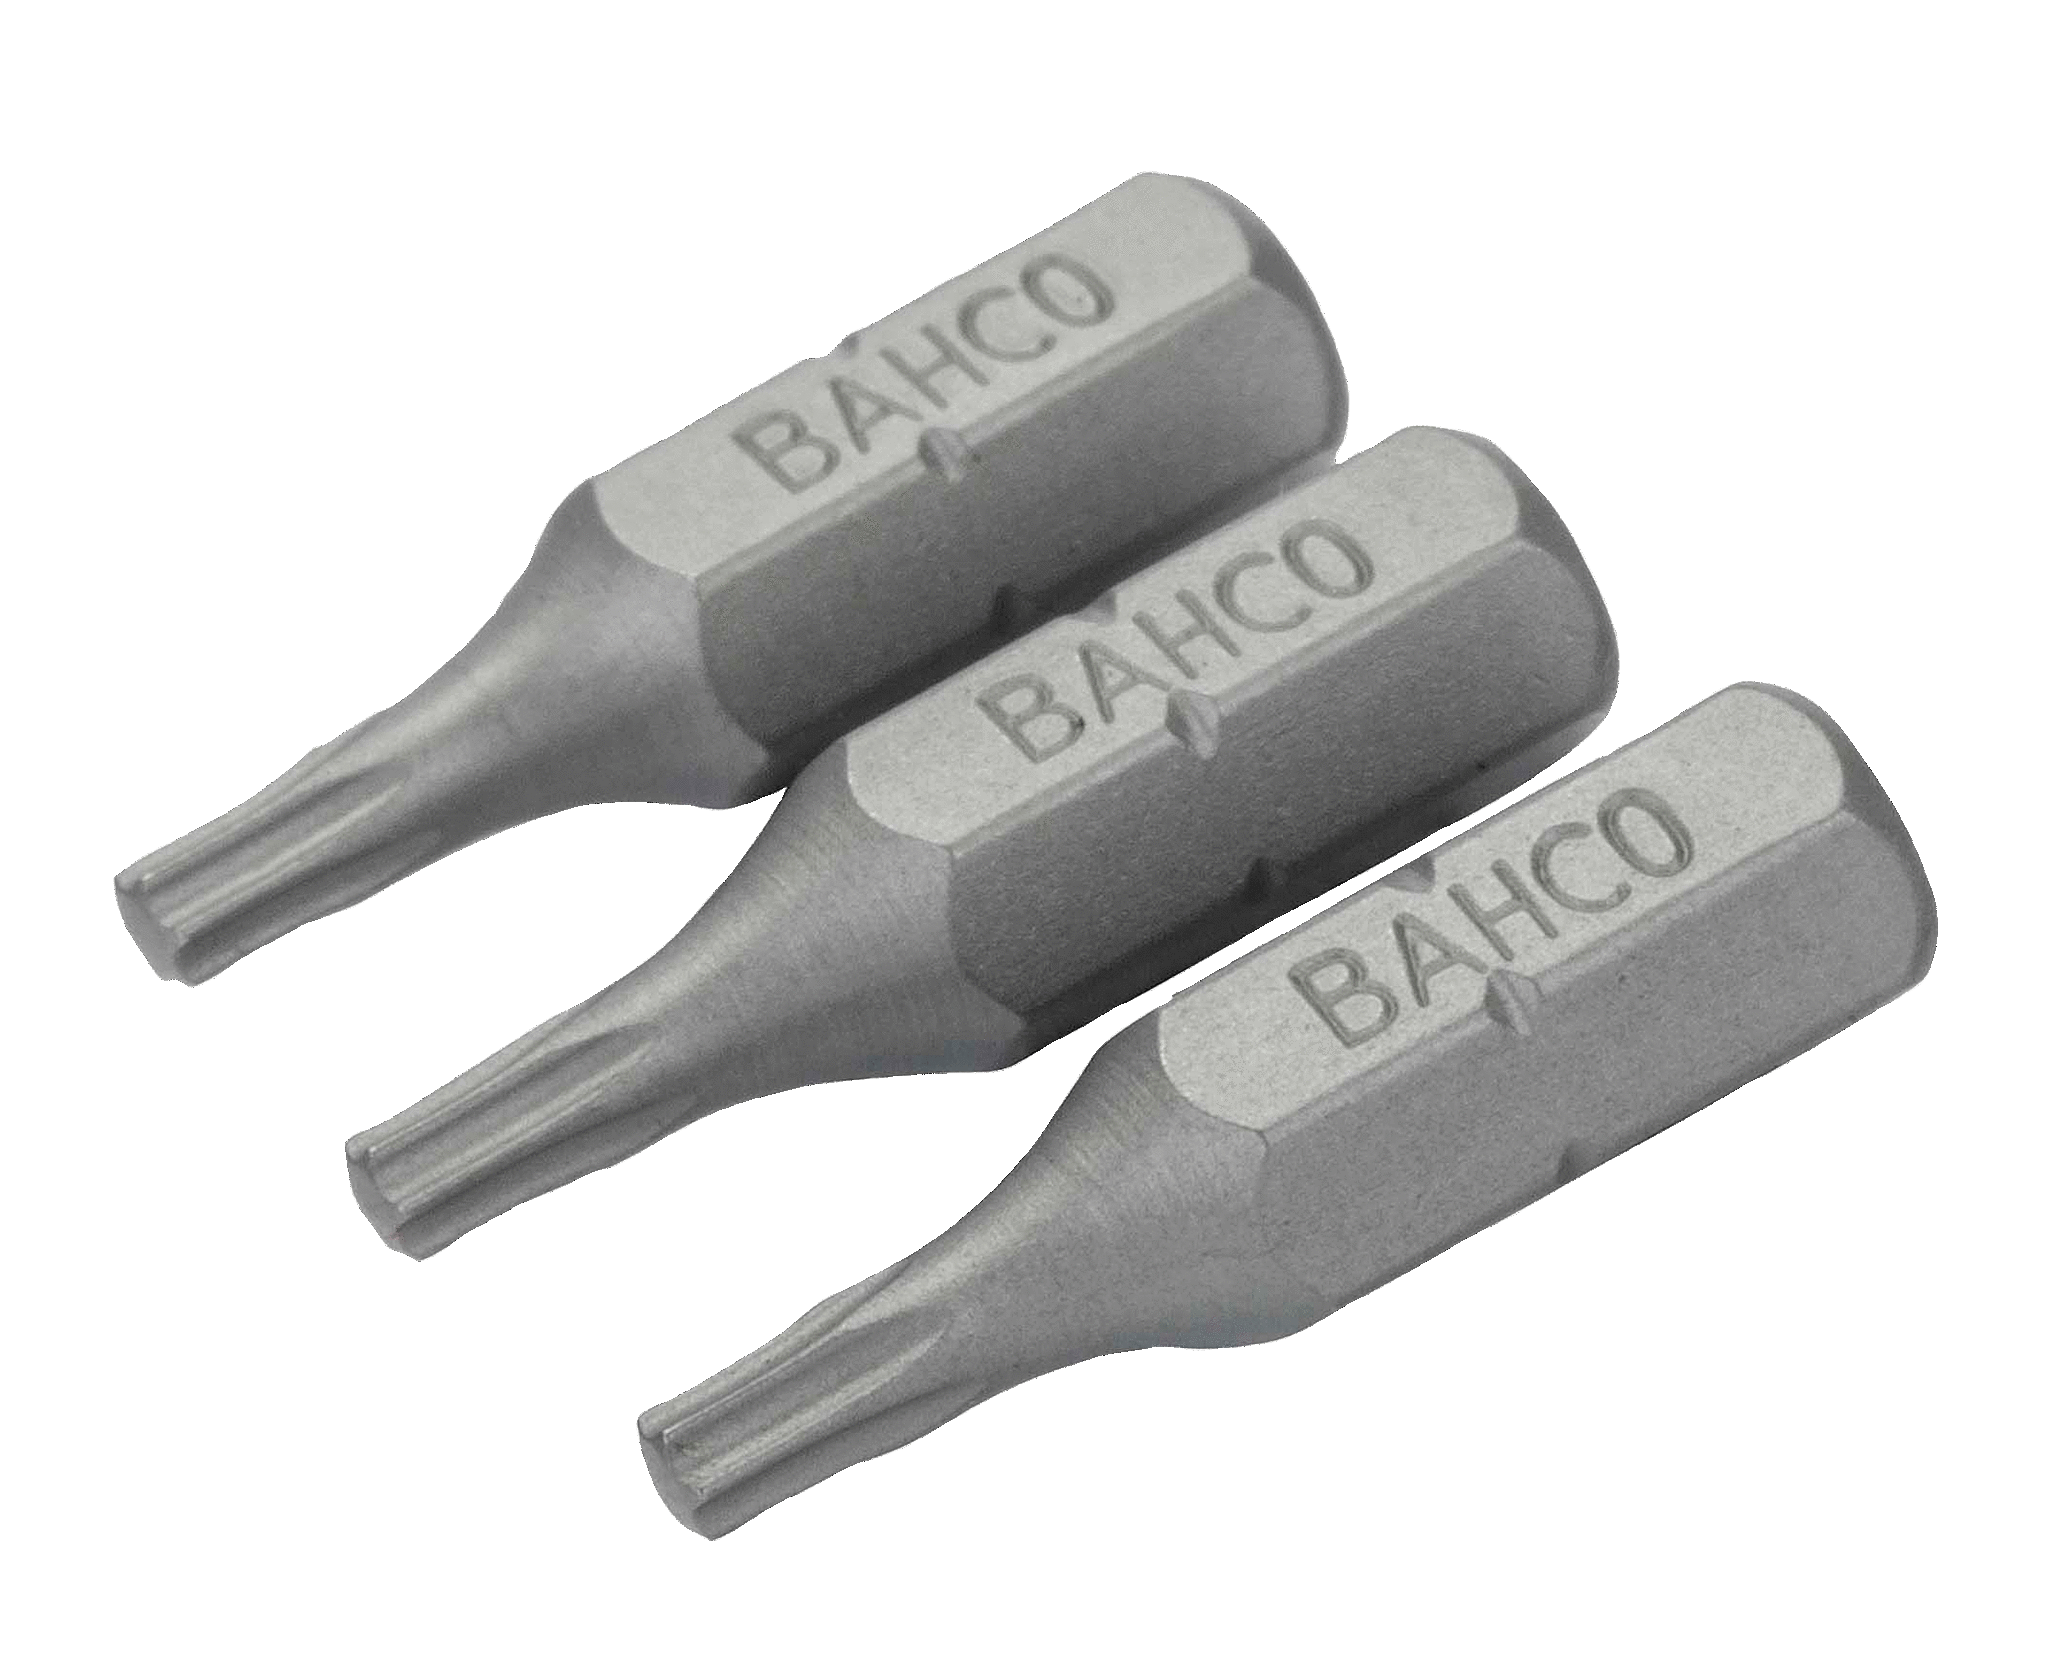 картинка Стандартные биты для отверток Torx®, 25 мм BAHCO 59S/T27 от магазина "Элит-инструмент"